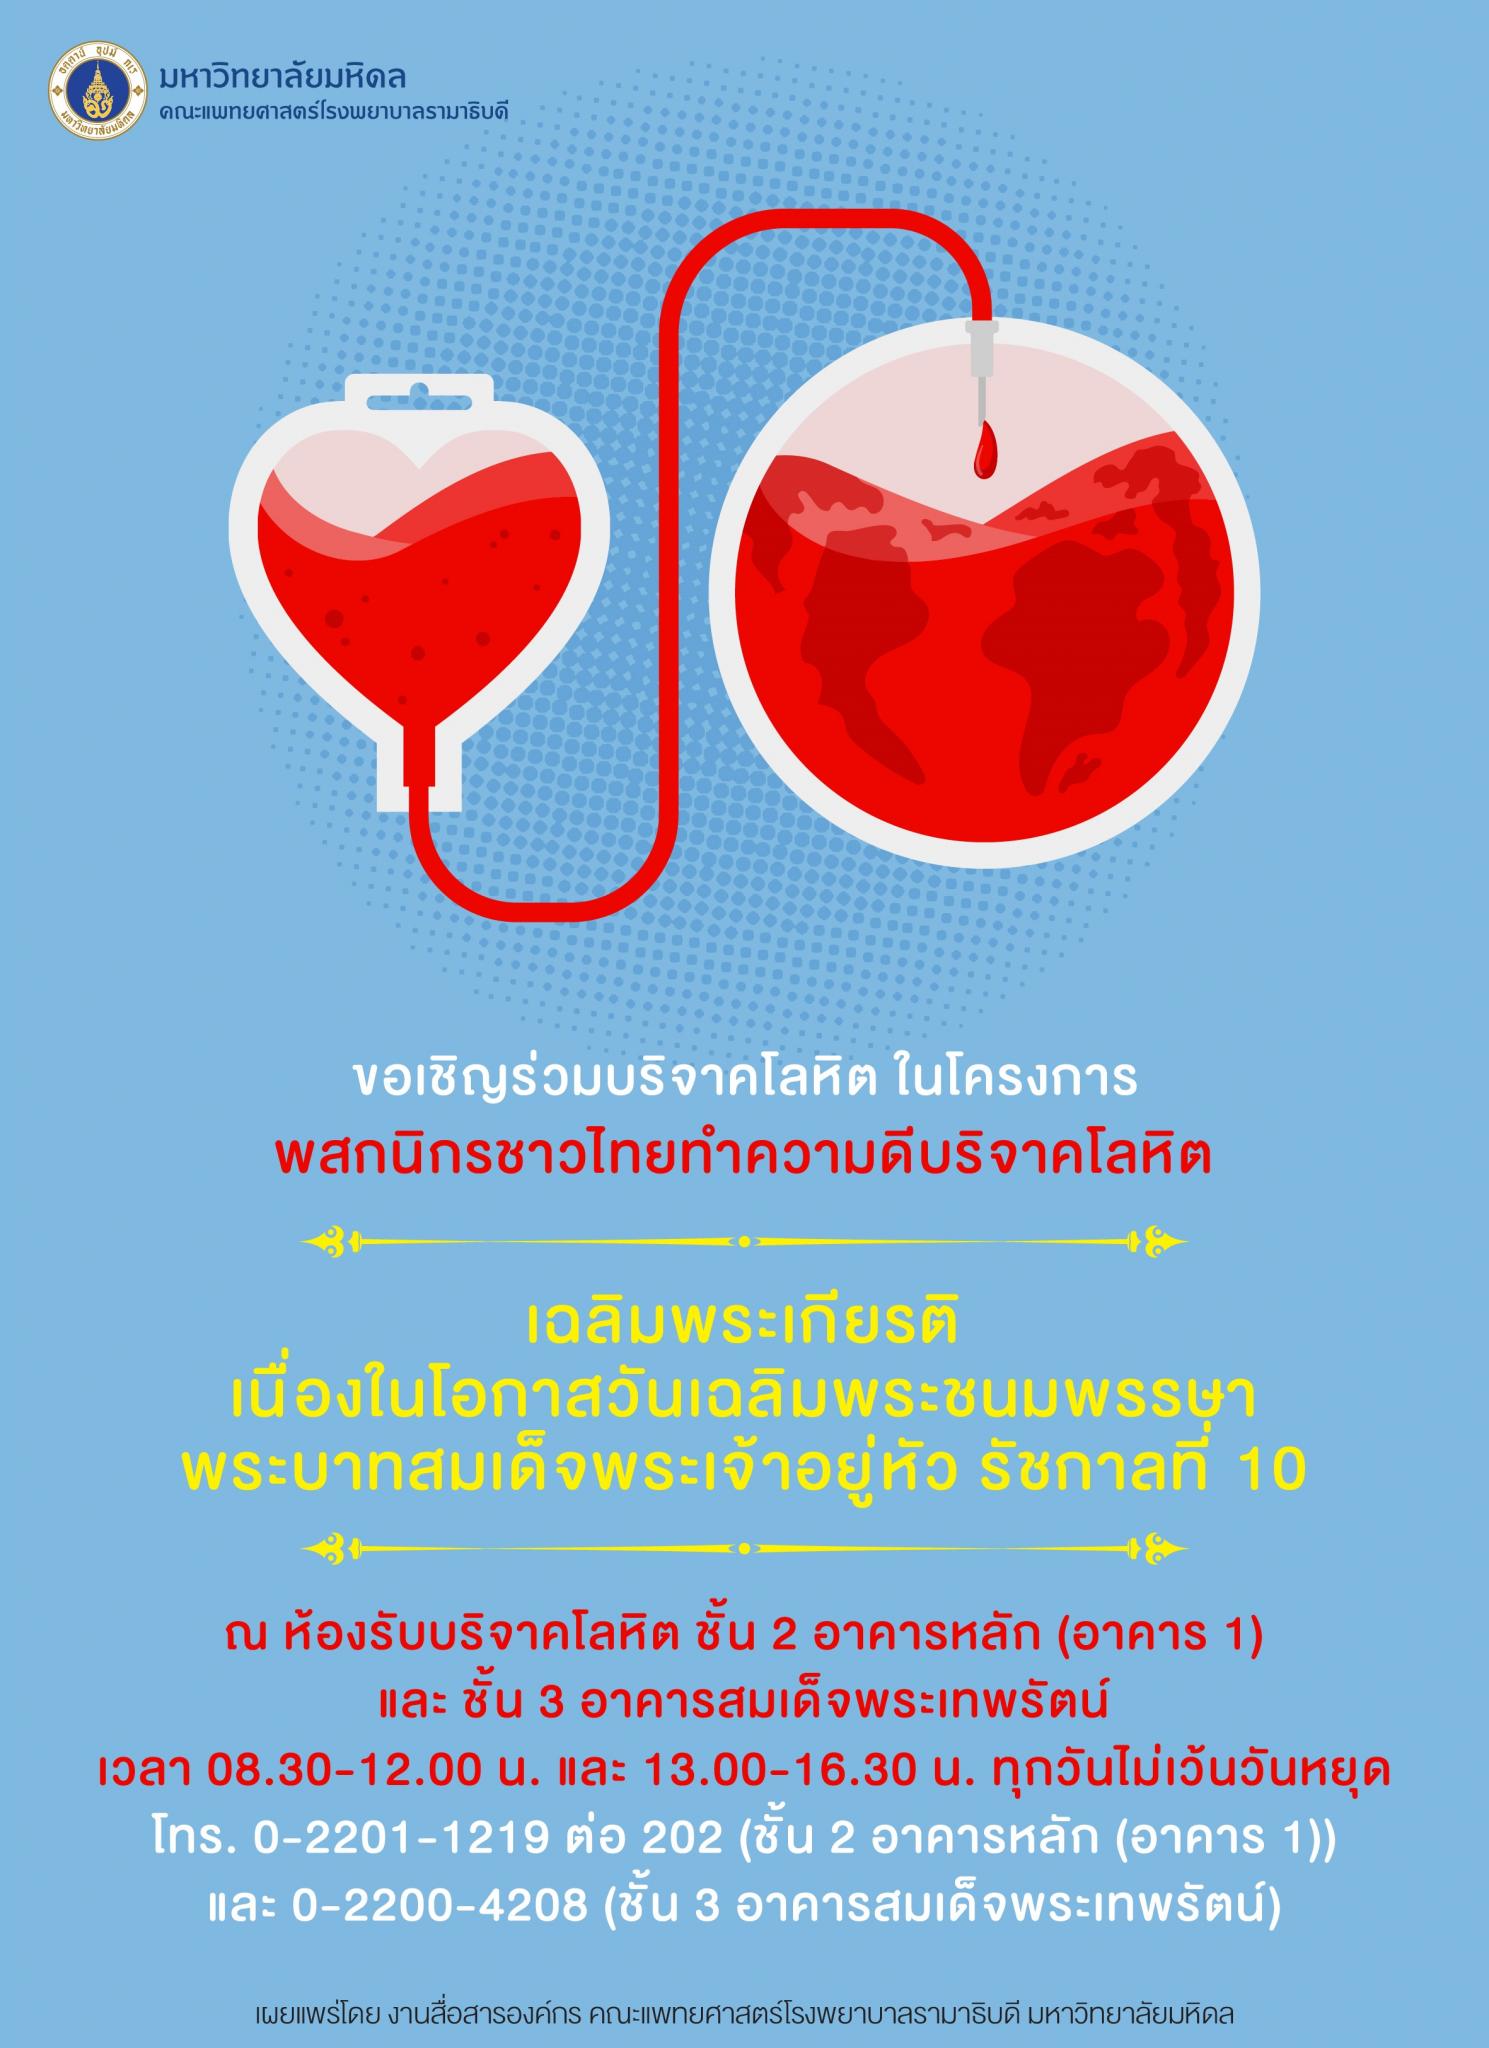 ขอเชิญร่วมบริจาคโลหิต ในโครงการพสกนิกรชาวไทยทำความดีบริจาคโลหิต